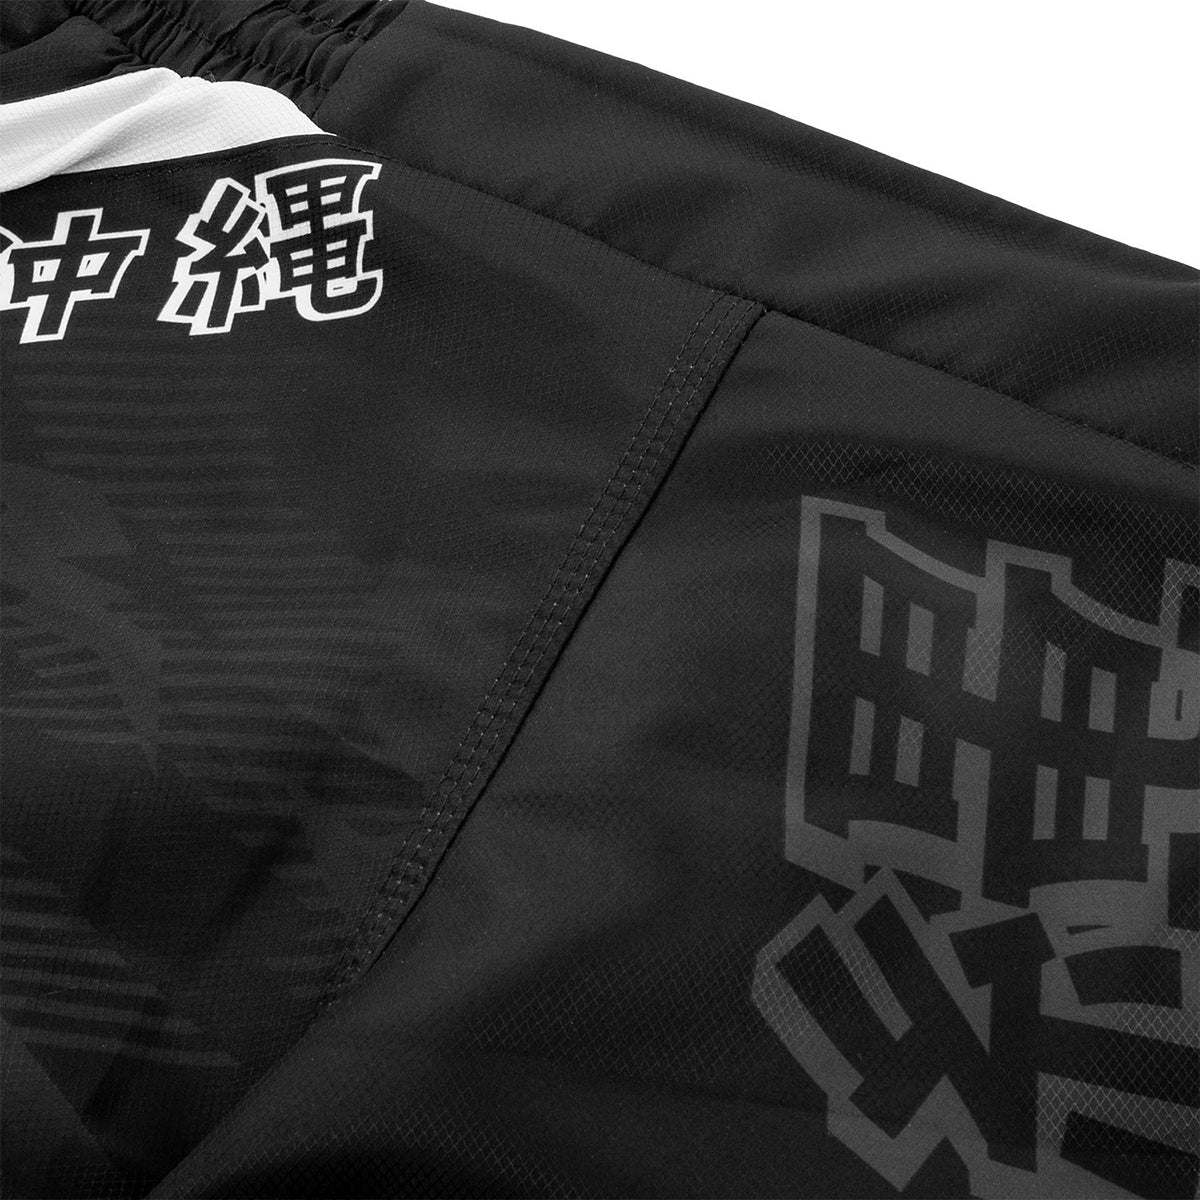 Venum Okinawa 2.0 MMA Fight Shorts - Black/White Venum